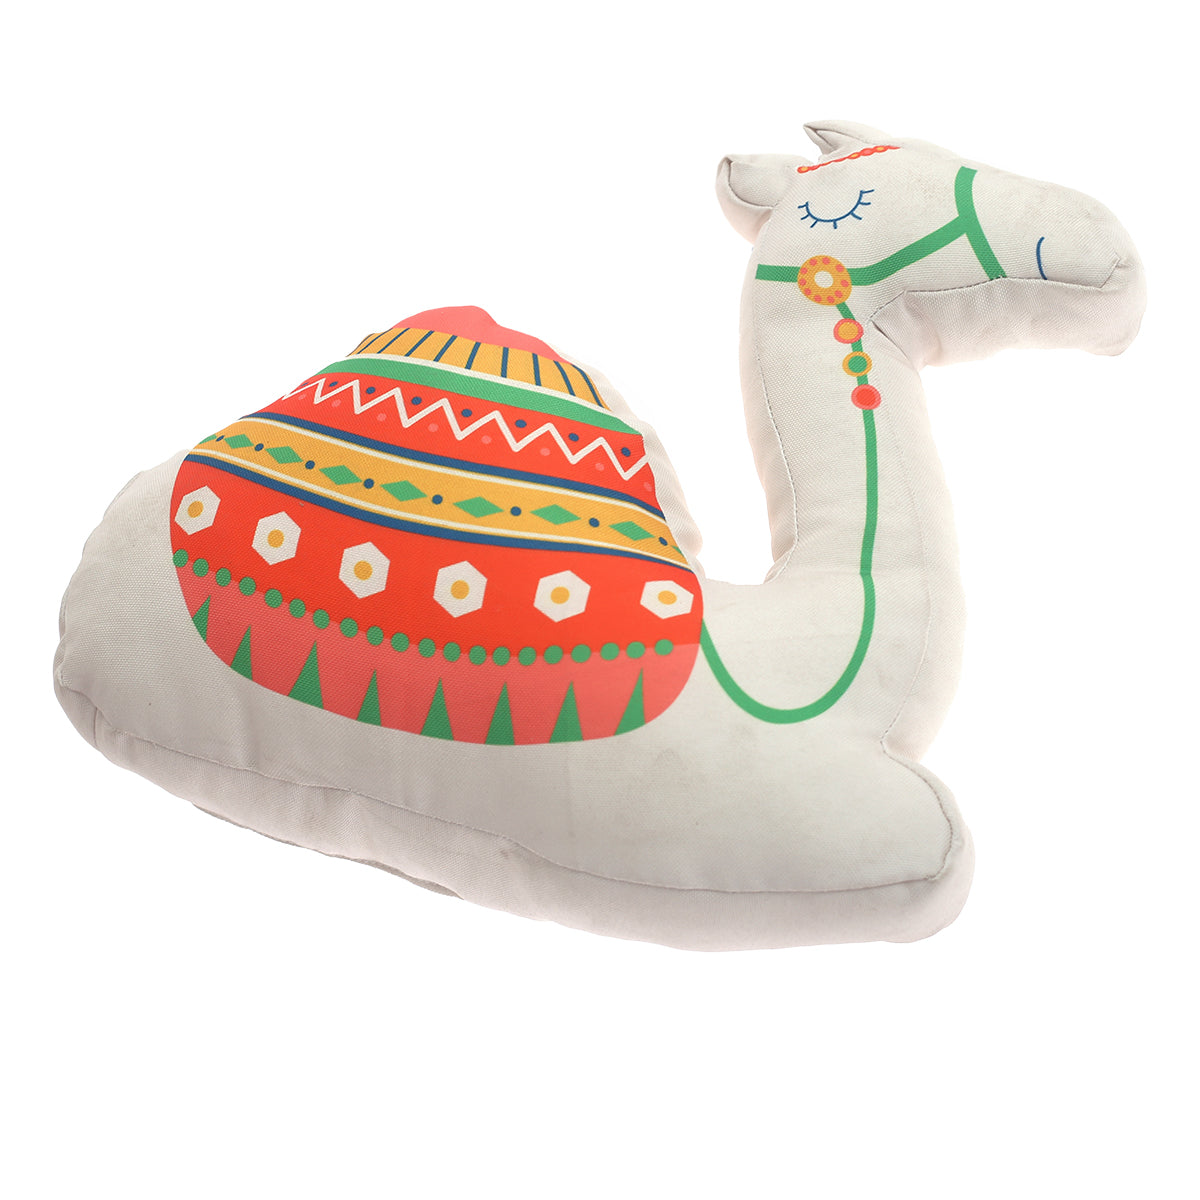 Oasis Camel Shaped Cushion 18X18